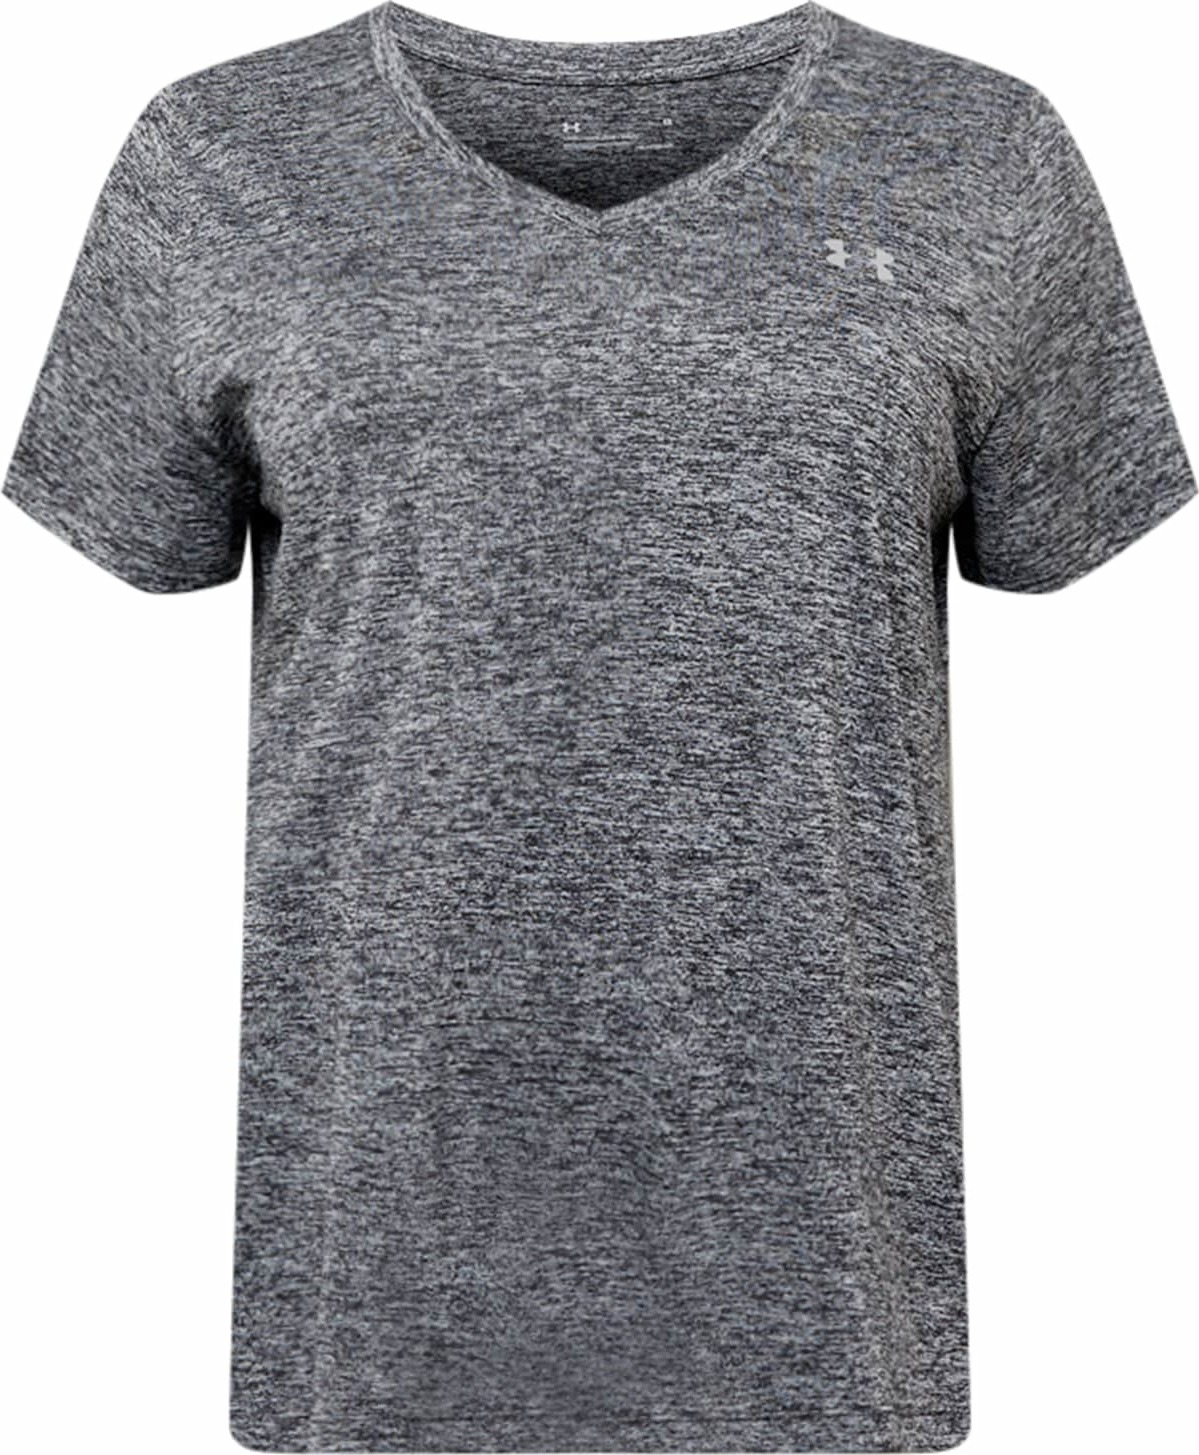 UNDER ARMOUR Funkční tričko 'Tech' šedý melír